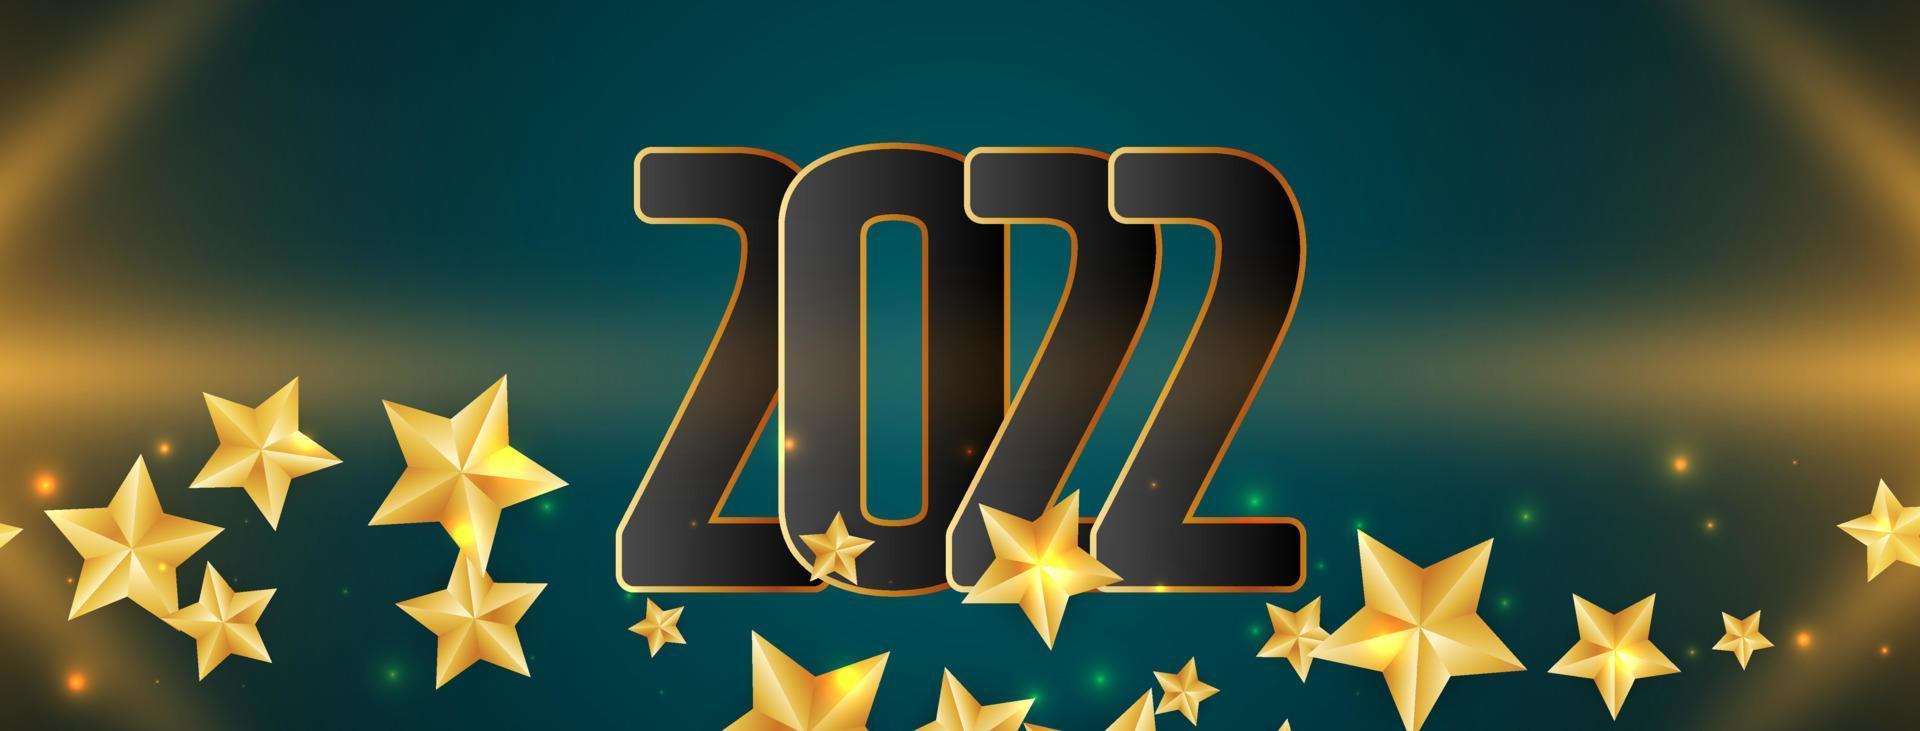 Desenho de banner com estrelas de feliz ano novo de 2022 vetor